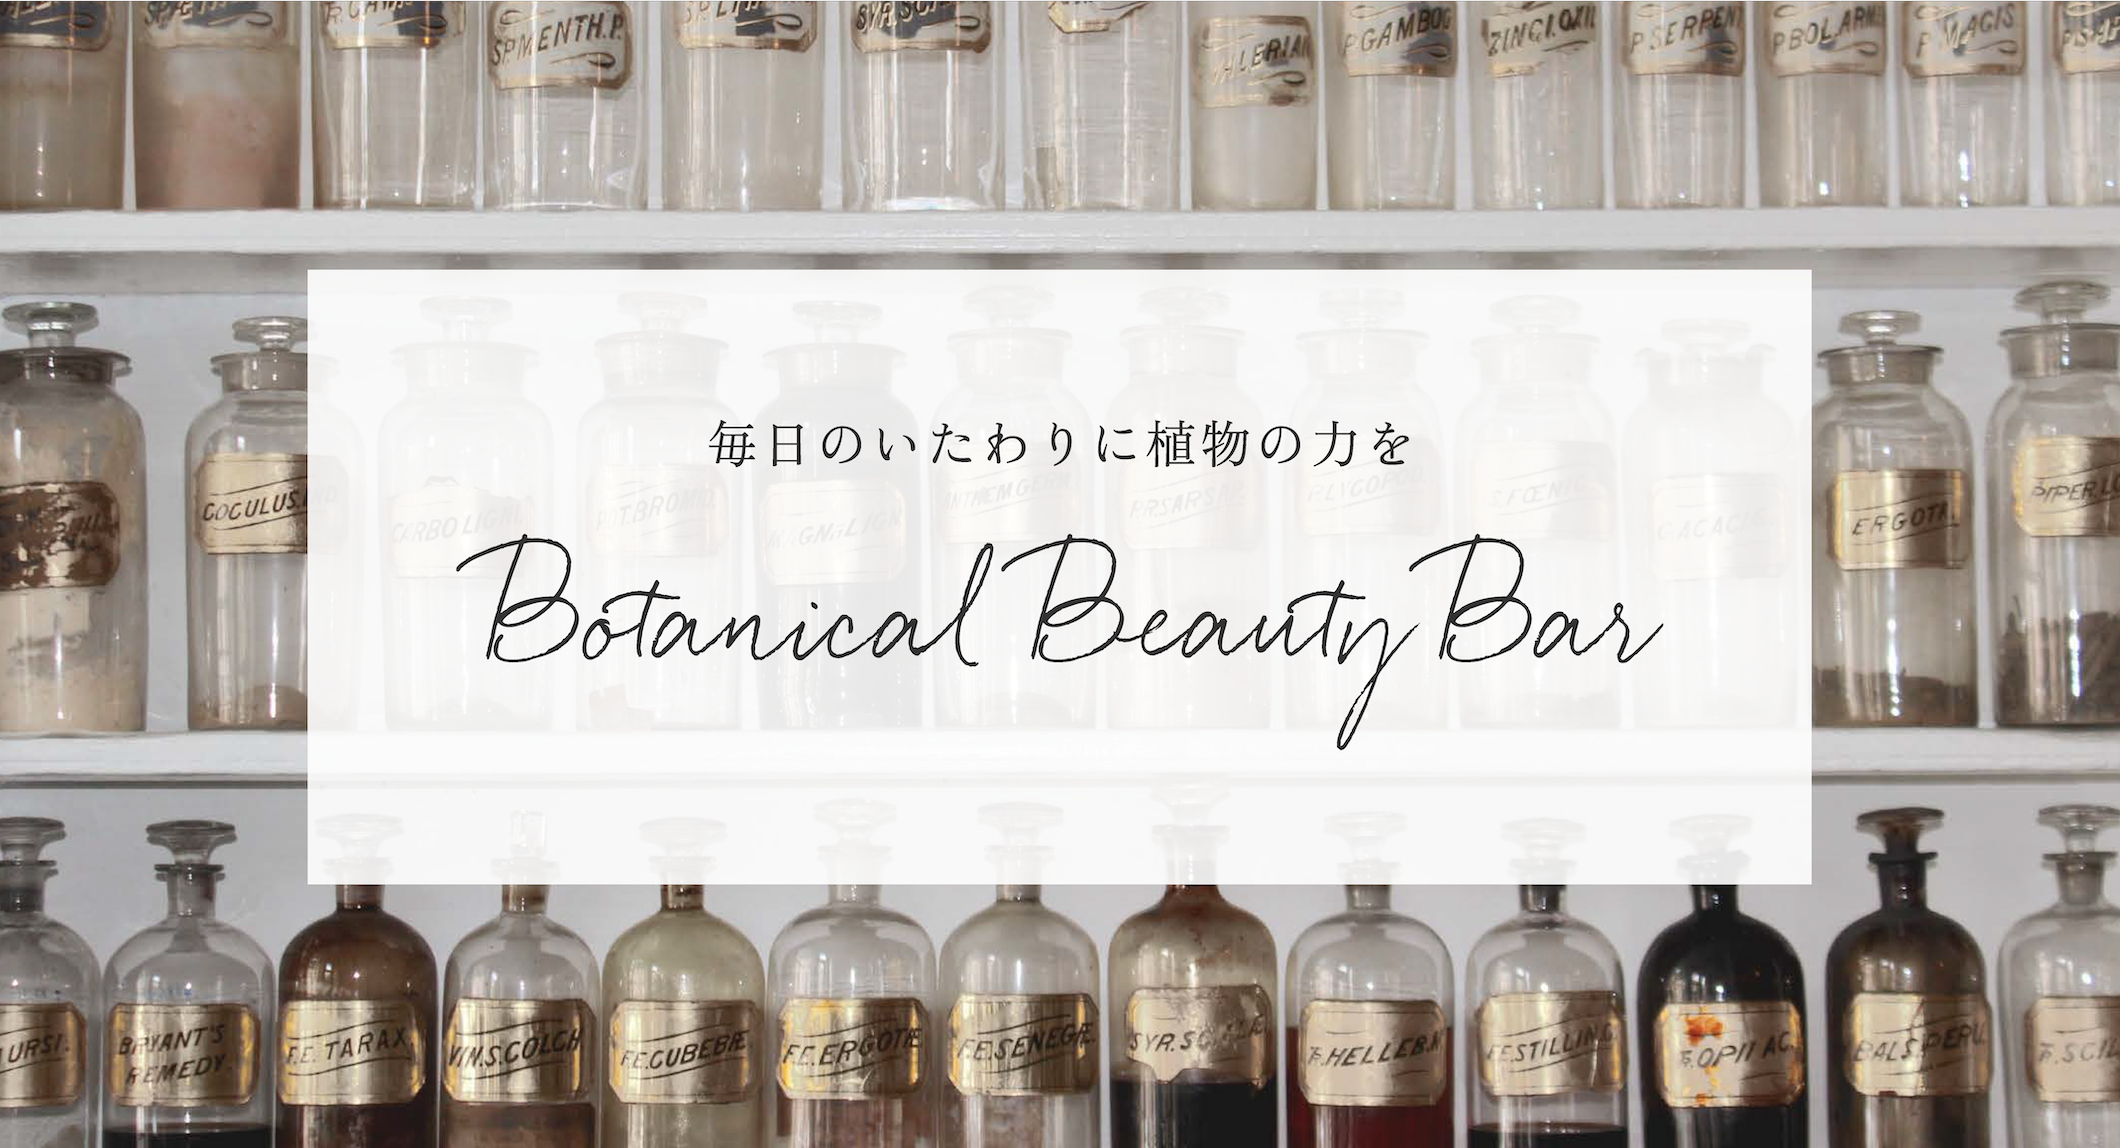 ボタニカル化粧水を自作できる、日本アロマ環境協会